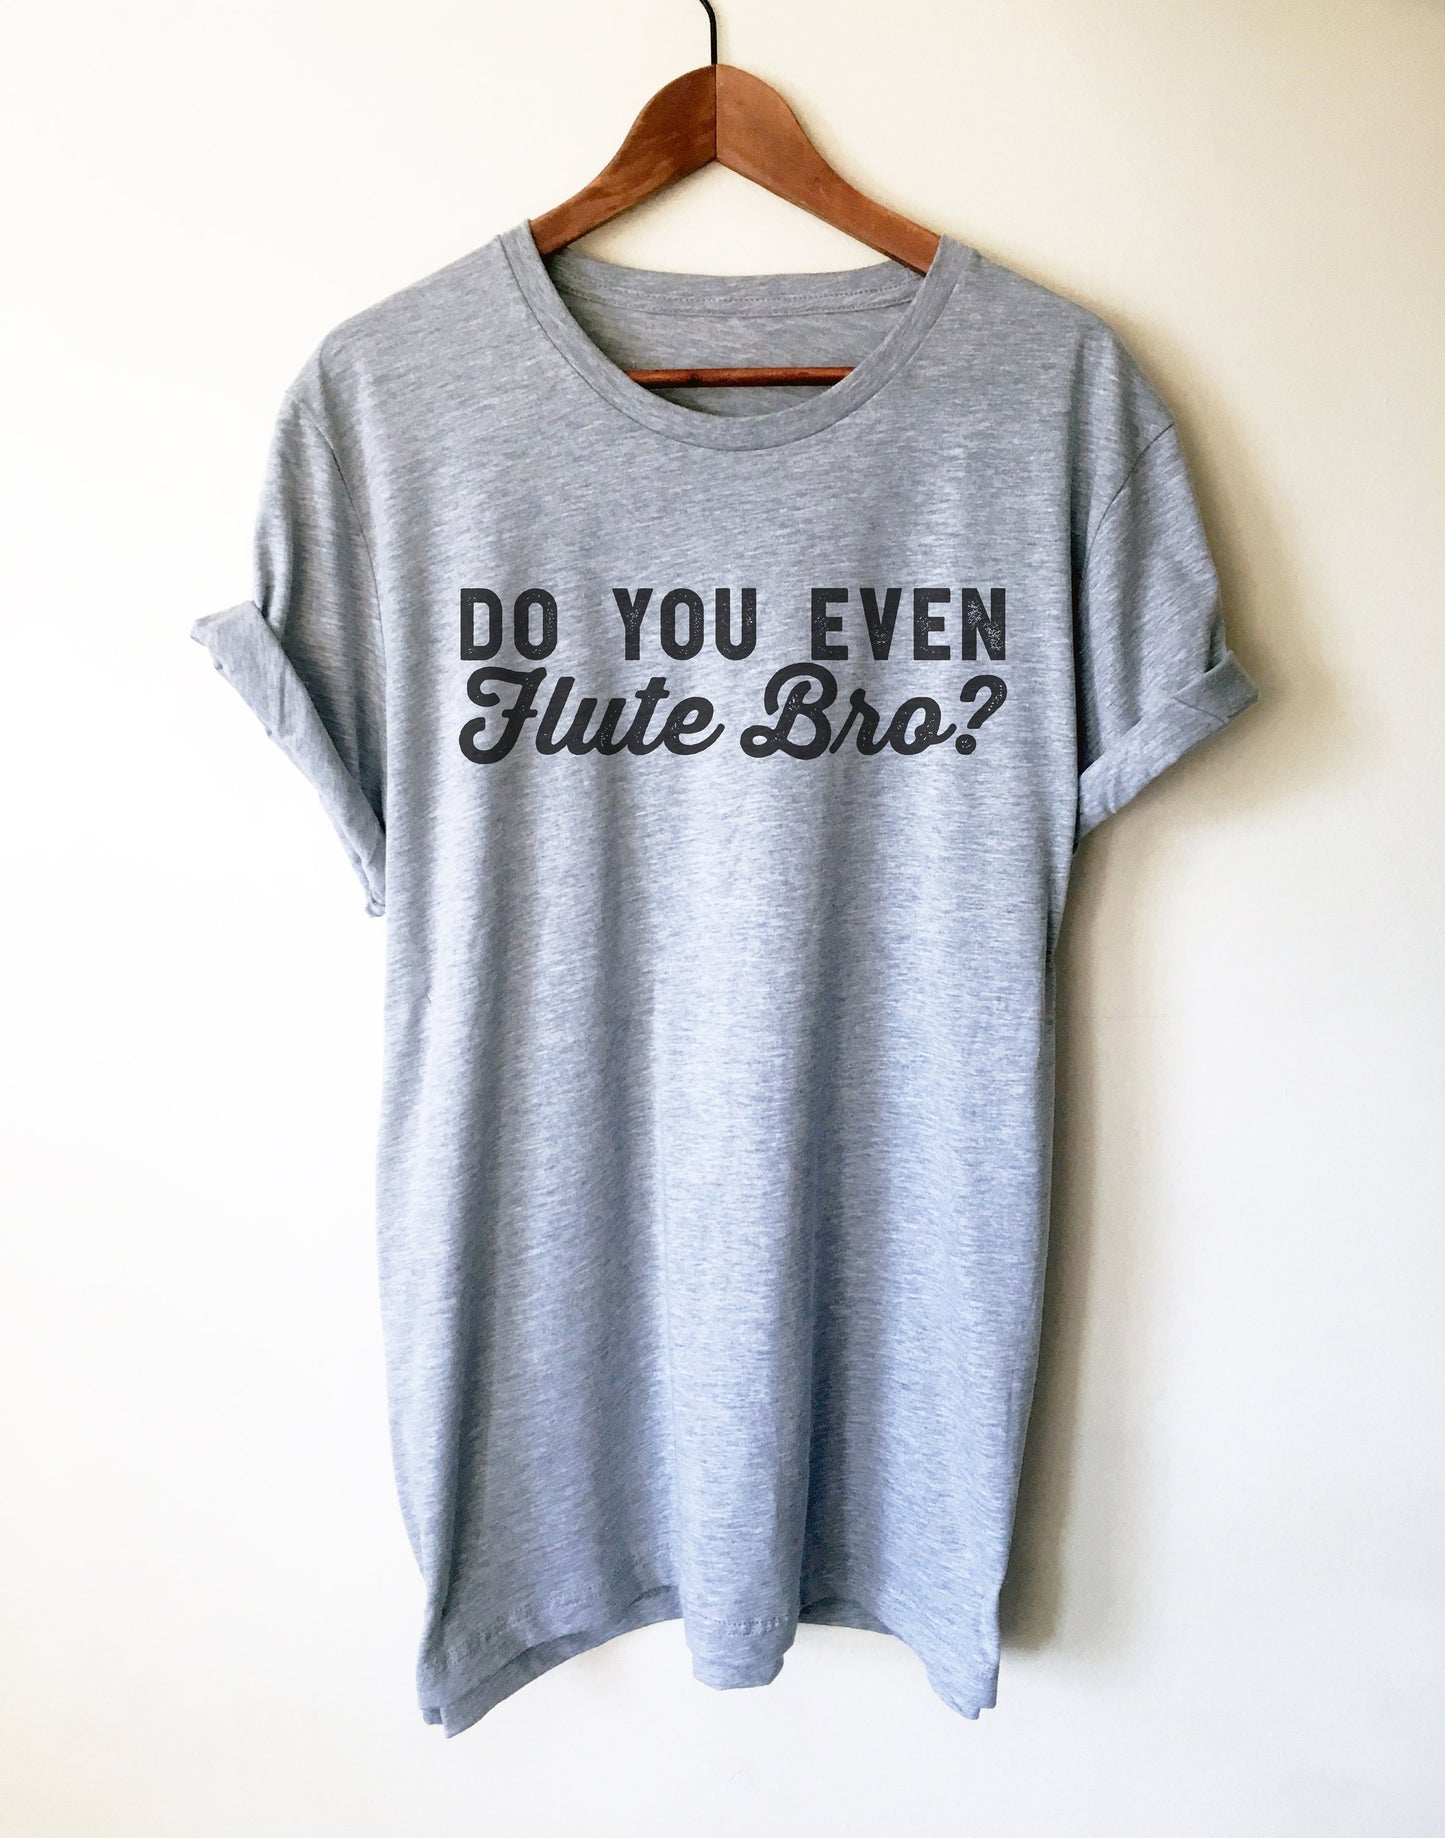 Do You Even Flute Bro? Unisex Shirt - Flute Shirt, Flute Gift, Musician Gift, Band T-Shirts, Music Shirt, Music Teacher Shirt